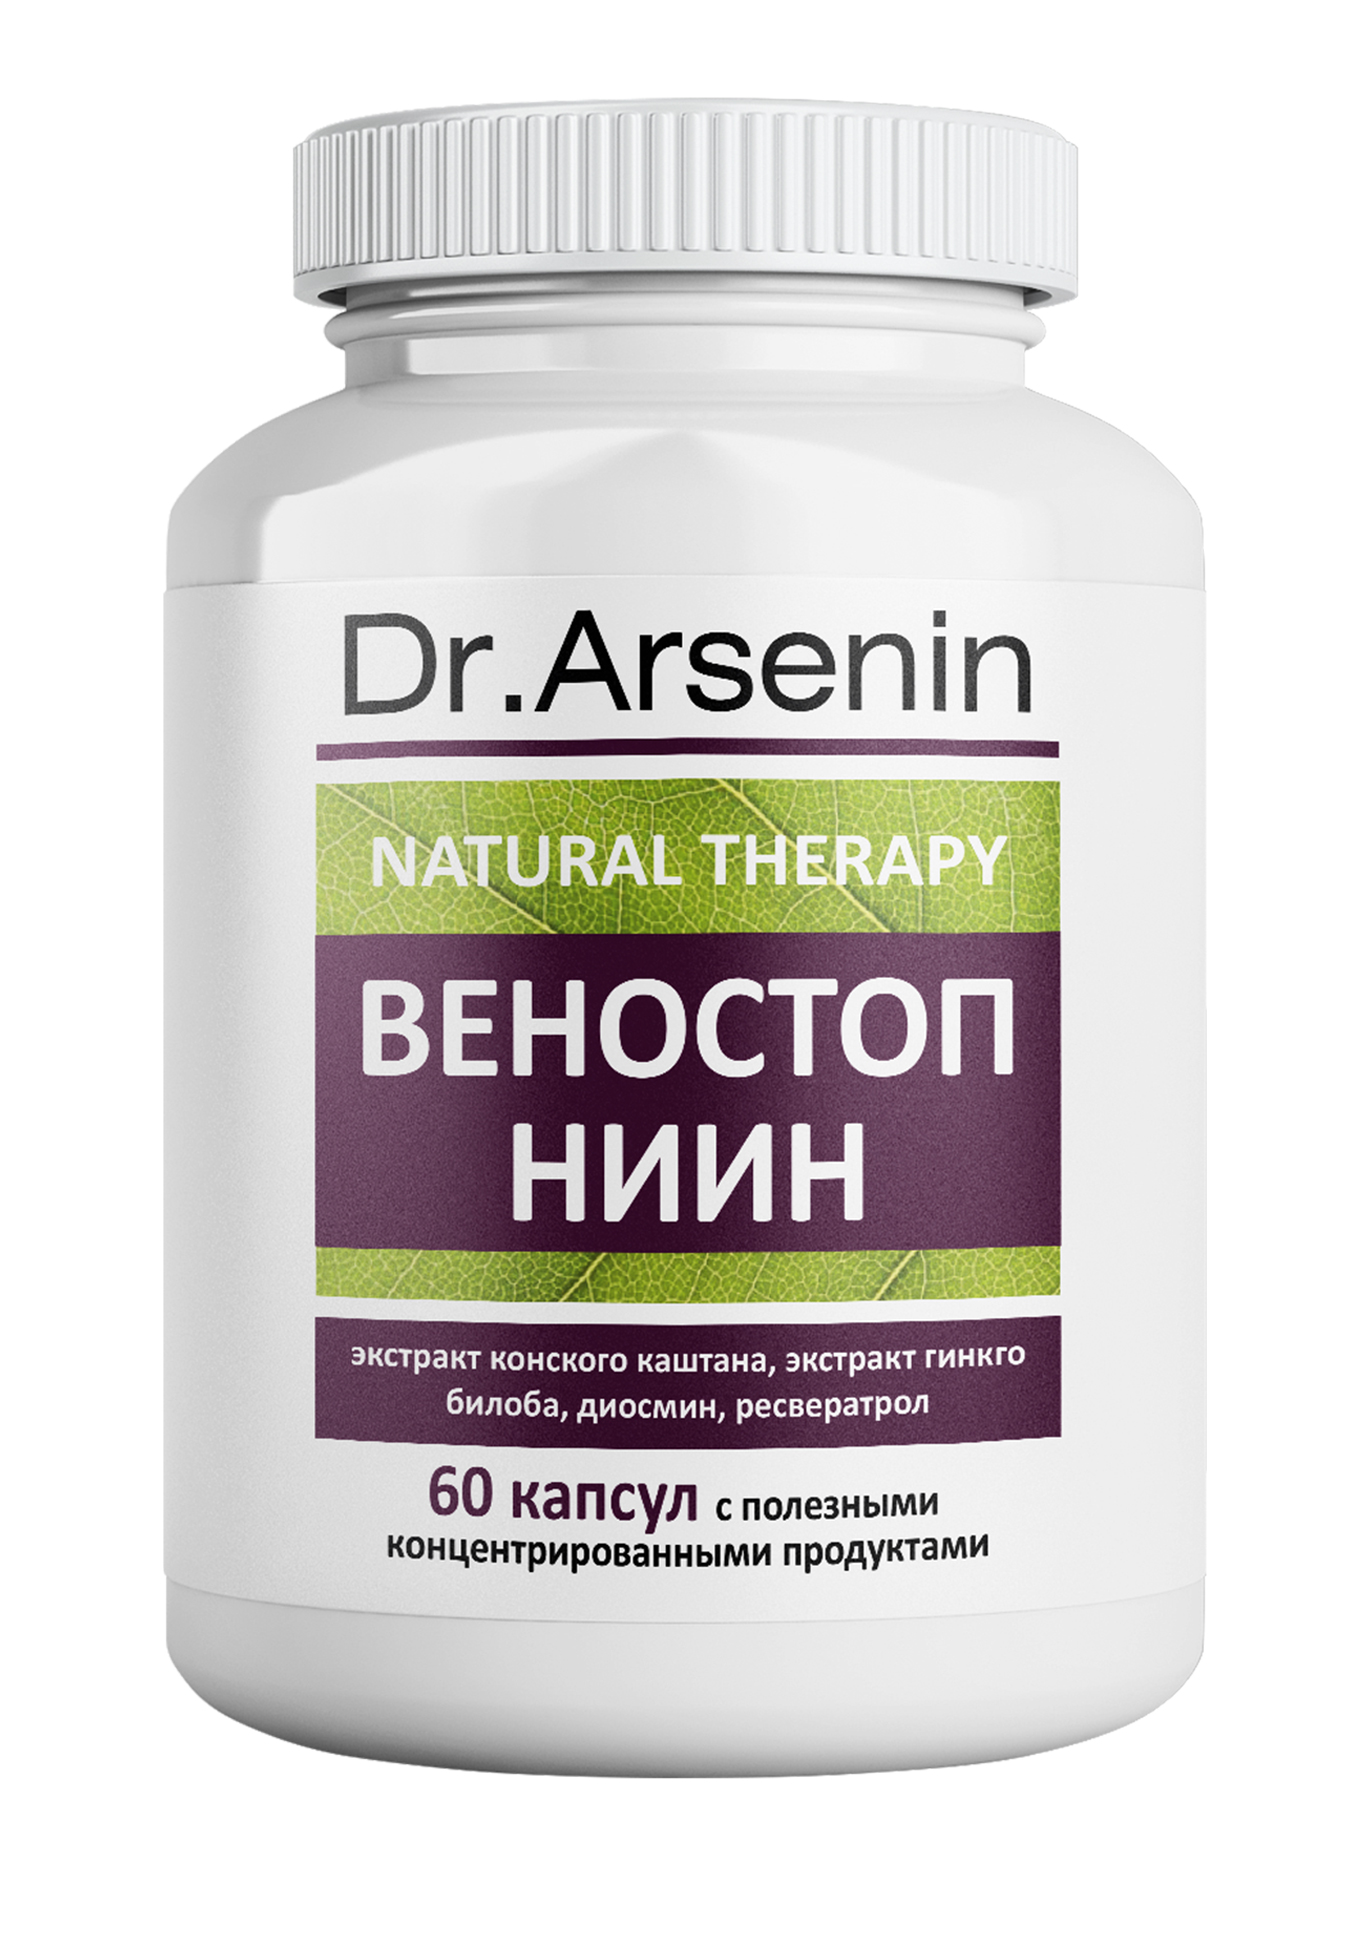 Dr. Arsenin. ВЕНОСТОП НИИН dr arsenin концентрированный пищевой продукт зрение